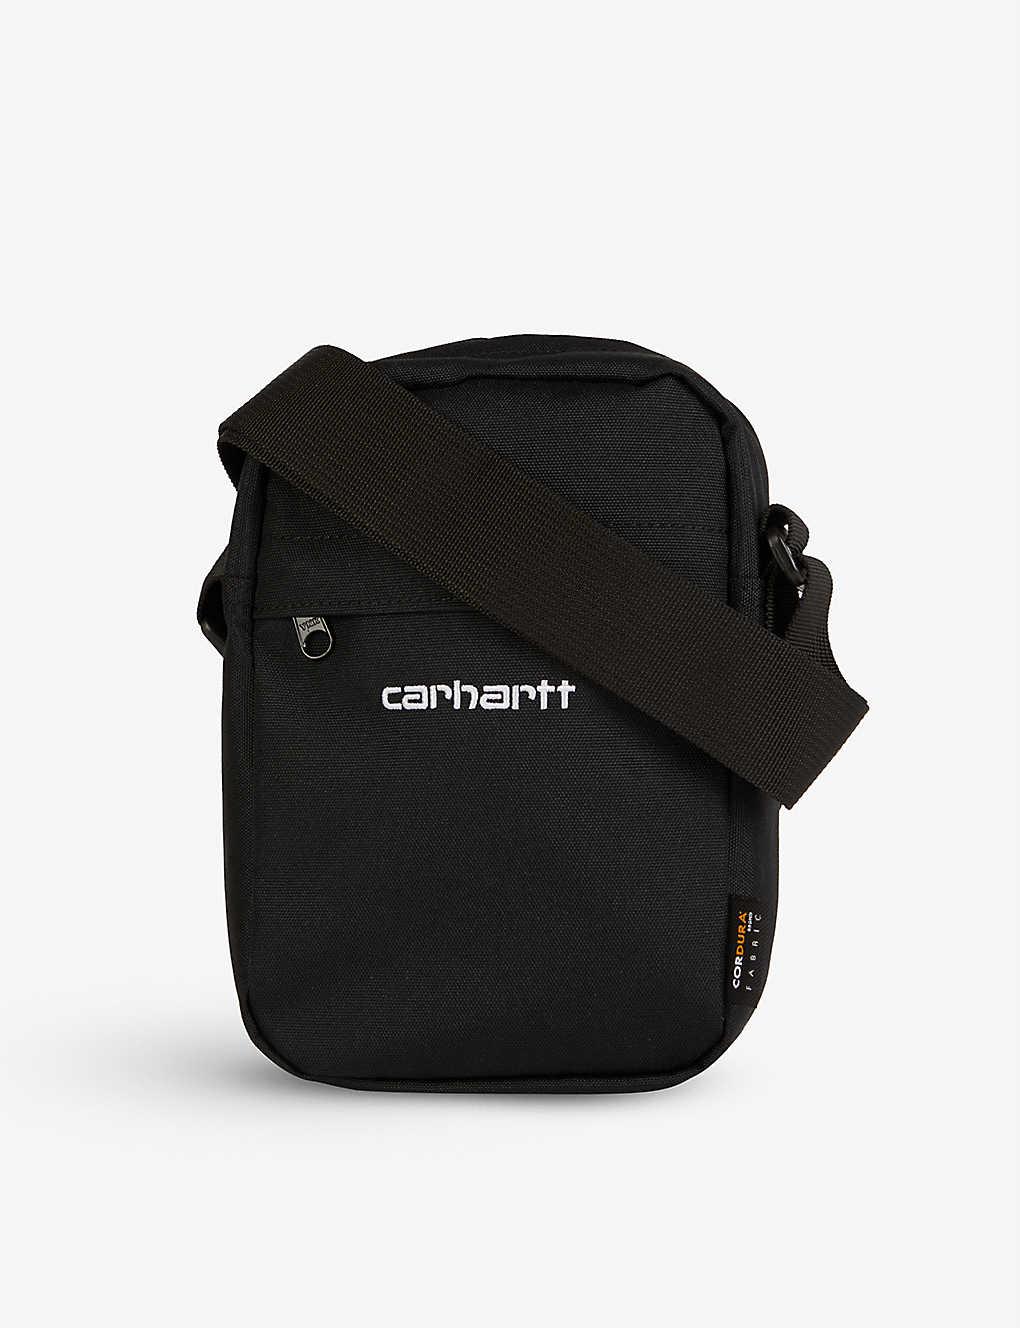 Carhartt WIP Mens Black / White Payton Woven Cross-body Bag for Men | Lyst